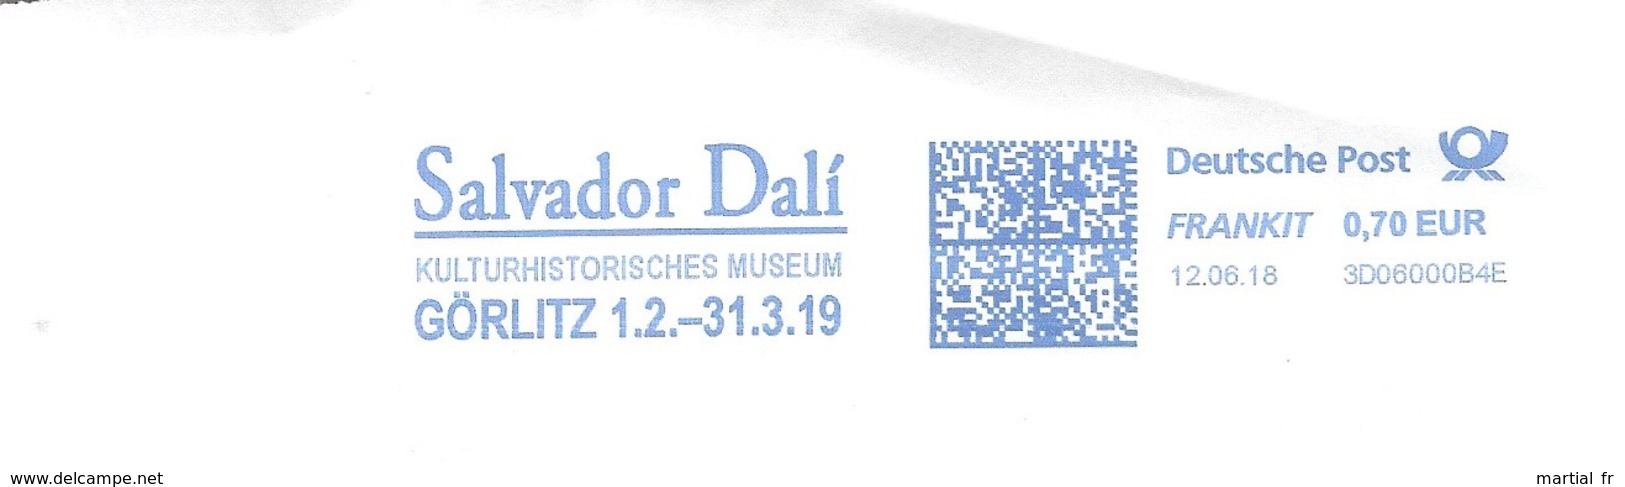 EMA ALLEMAGNE DEUTSCHLAND Peintre Art Kunst SALVADOR DALI GORLITZ KULTUR HISTORISCH MUSEUM MUSEE CULTURE HISTOIRE - Moderne